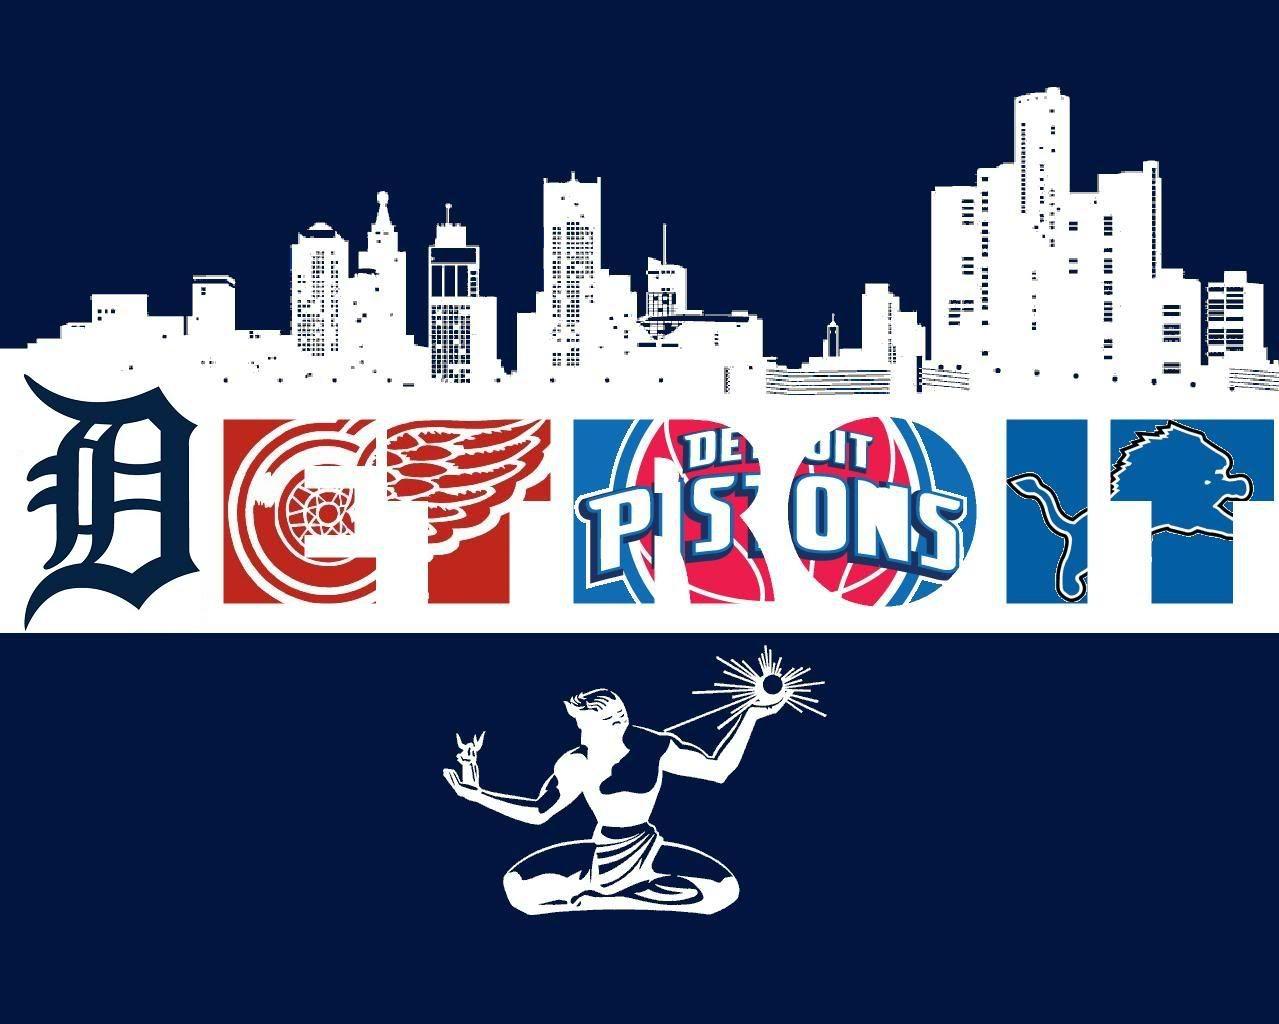 Detroit Sports Logo - This Photo Was Uploaded By Pc Davis. Detroit Memories. Detroit